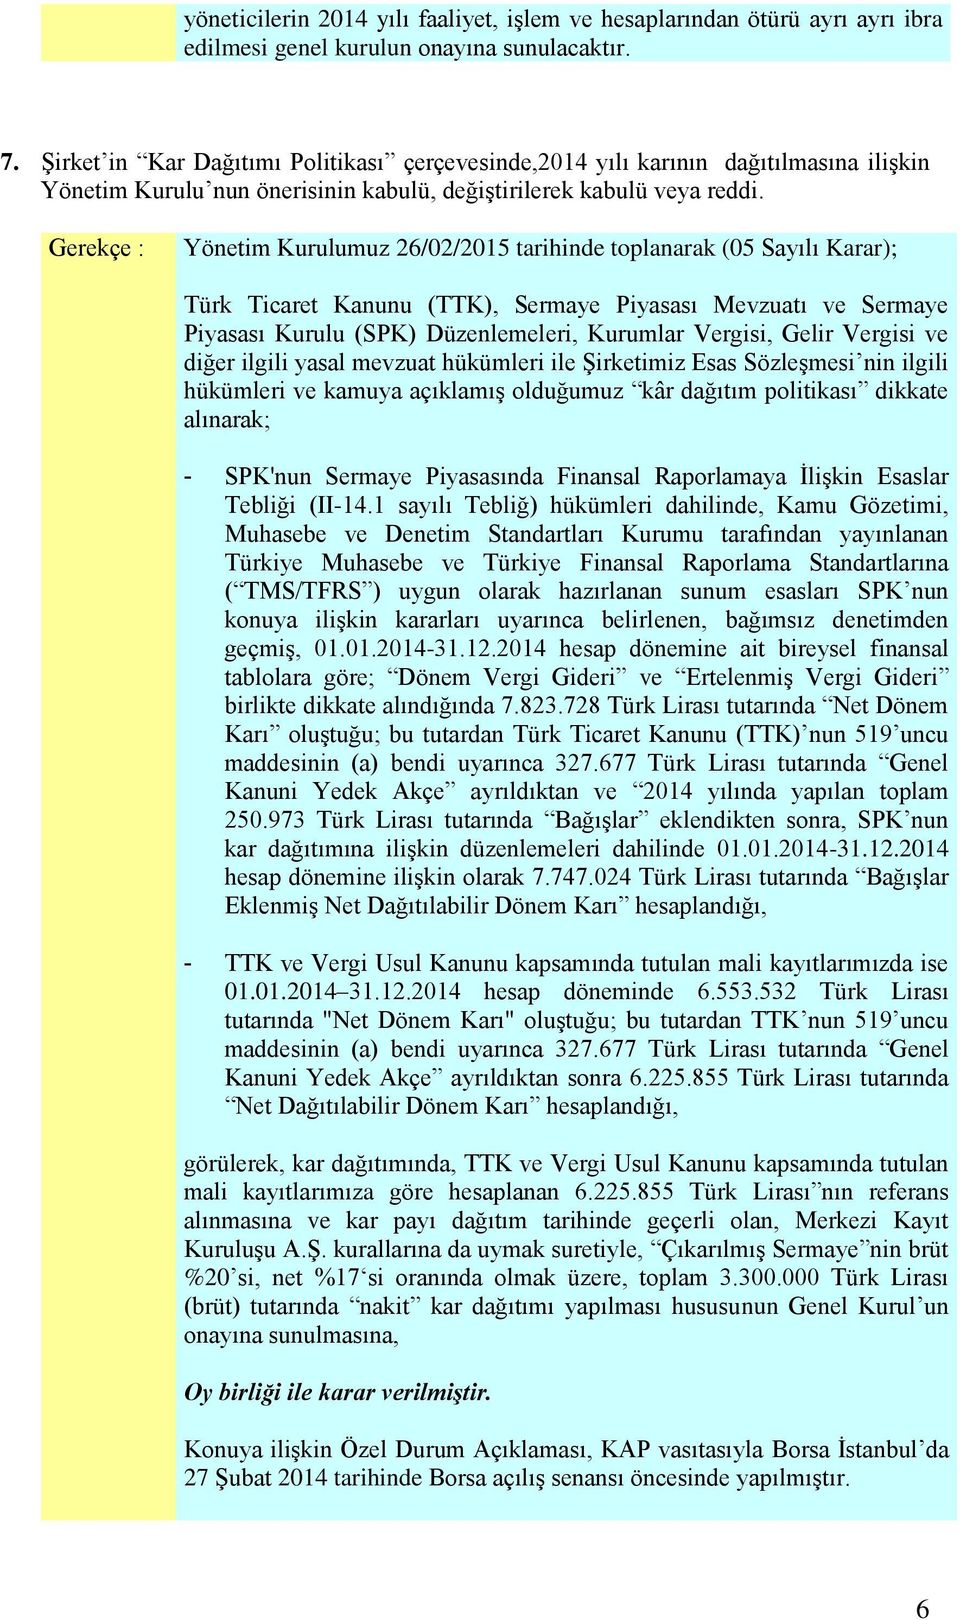 Yönetim Kurulumuz 26/02/2015 tarihinde toplanarak (05 Sayılı Karar); Türk Ticaret Kanunu (TTK), Sermaye Piyasası Mevzuatı ve Sermaye Piyasası Kurulu (SPK) Düzenlemeleri, Kurumlar Vergisi, Gelir